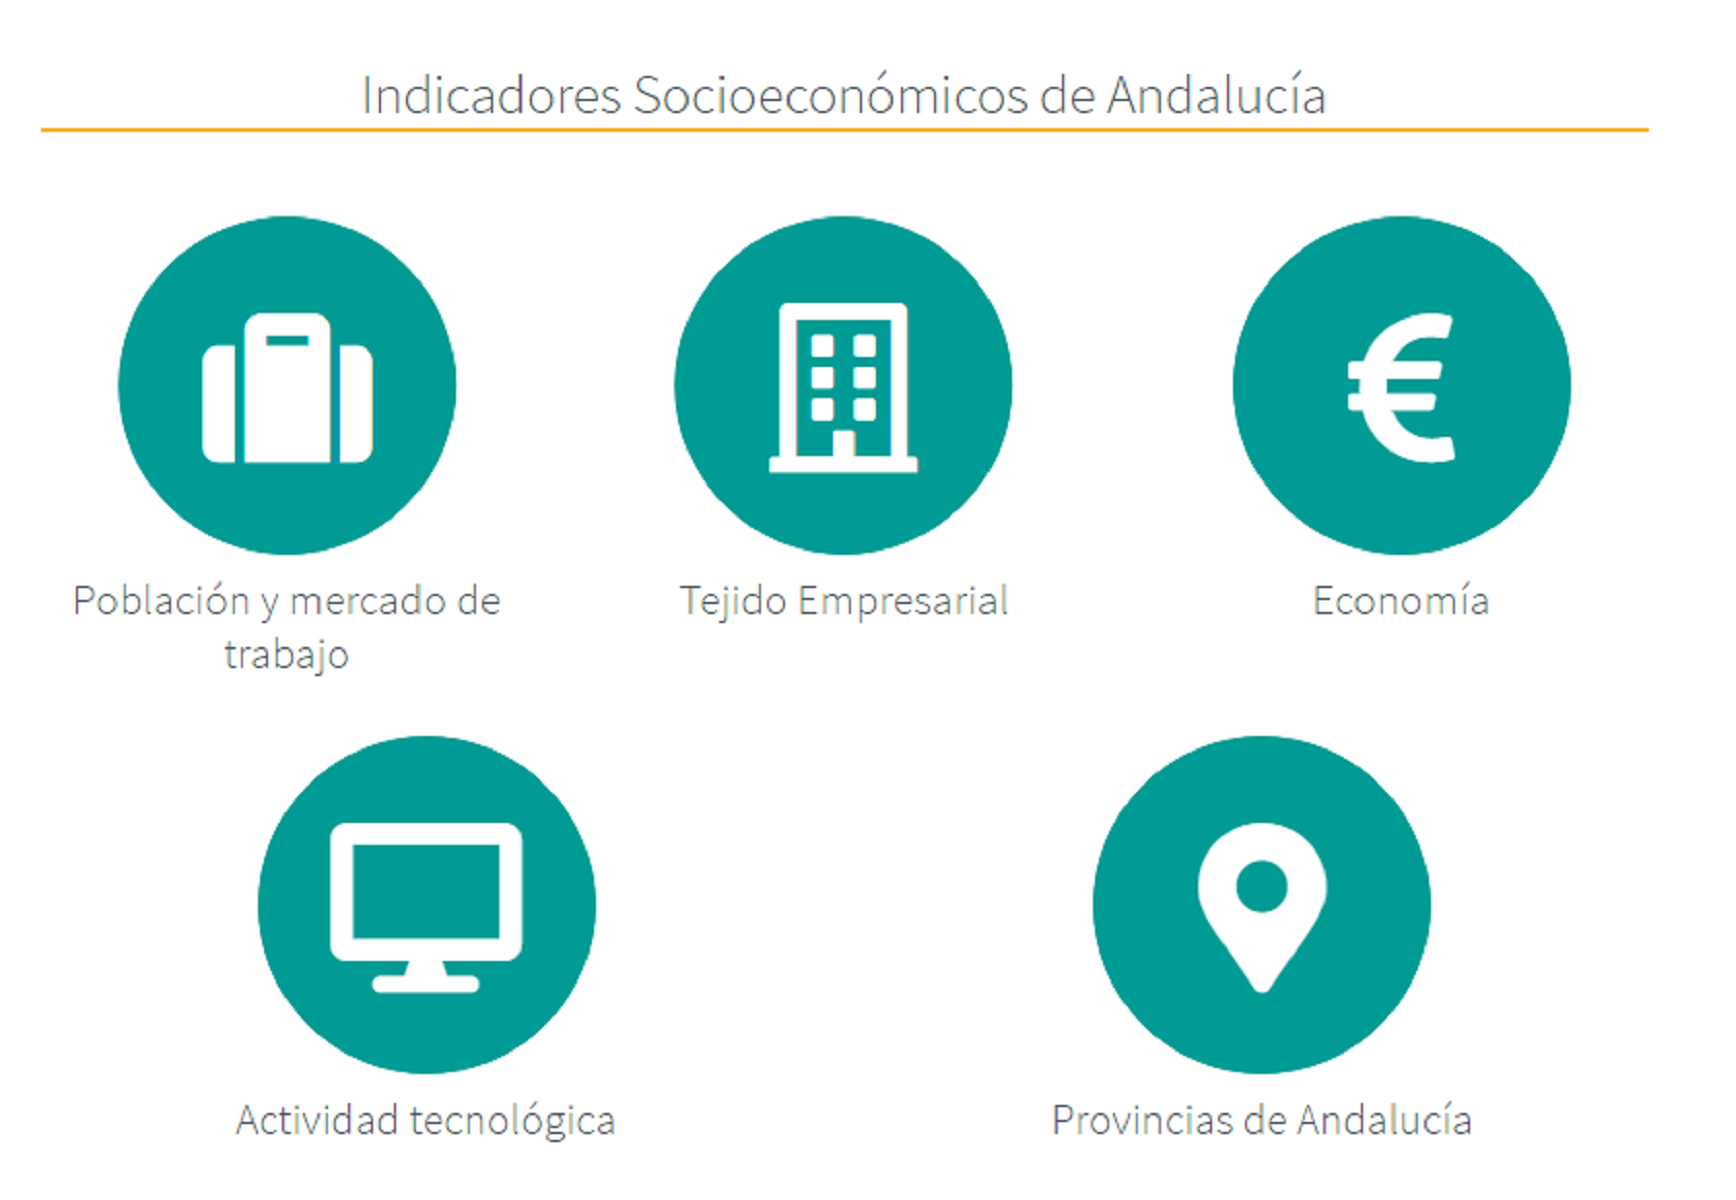 13/03/2020 - ¿Conoces los Indicadores Socioeconómicos de Andalucía?, última actualización 13 de Marzo de 2020